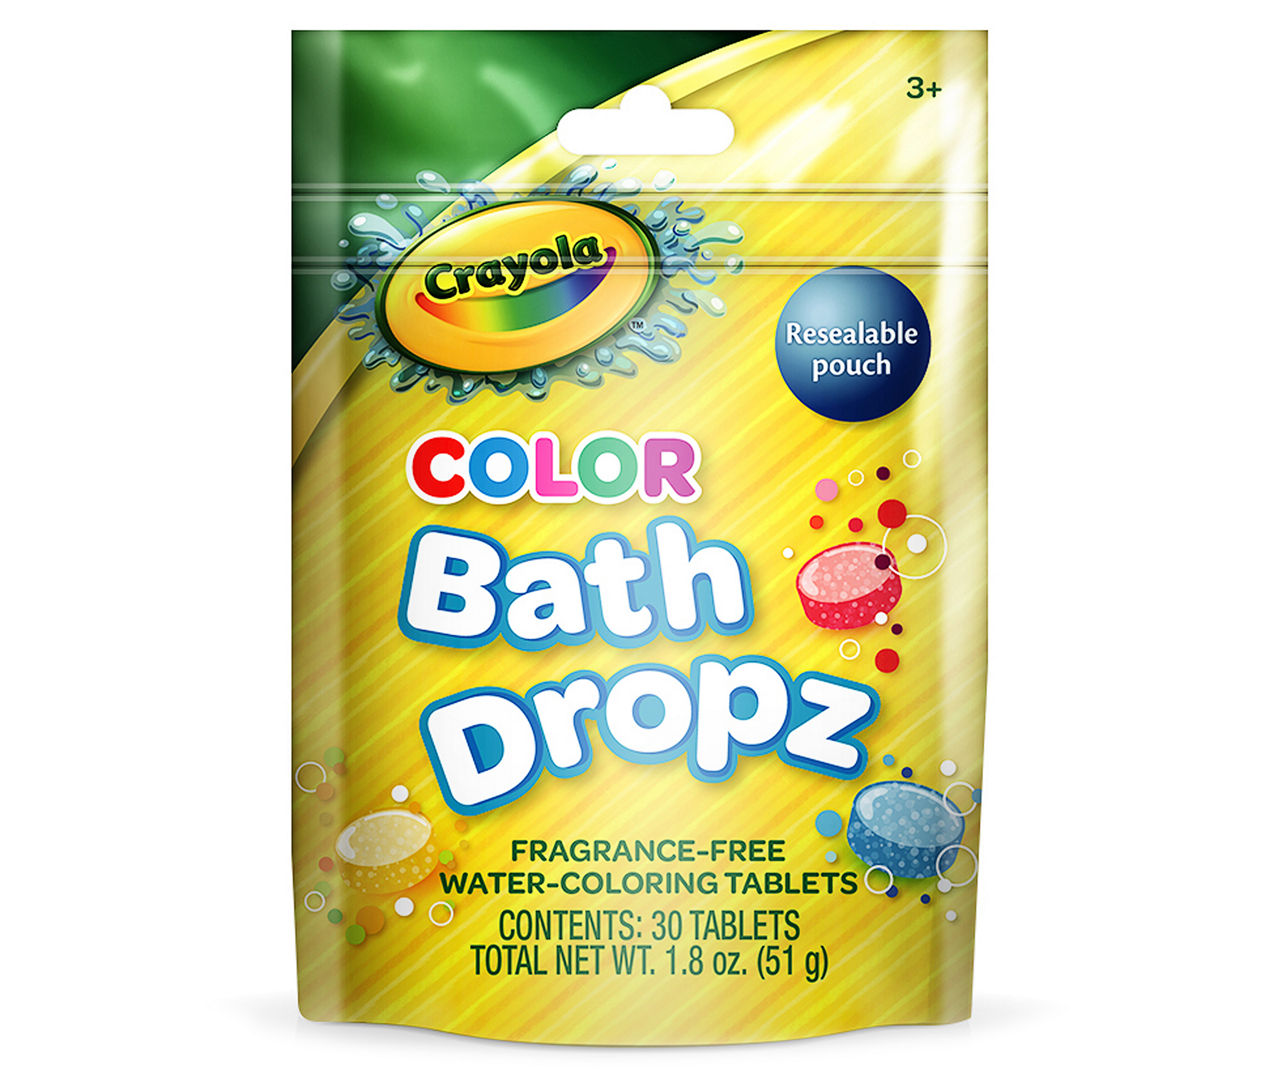 Crayola Bathtub Markers and Crayola Color Bath Drops